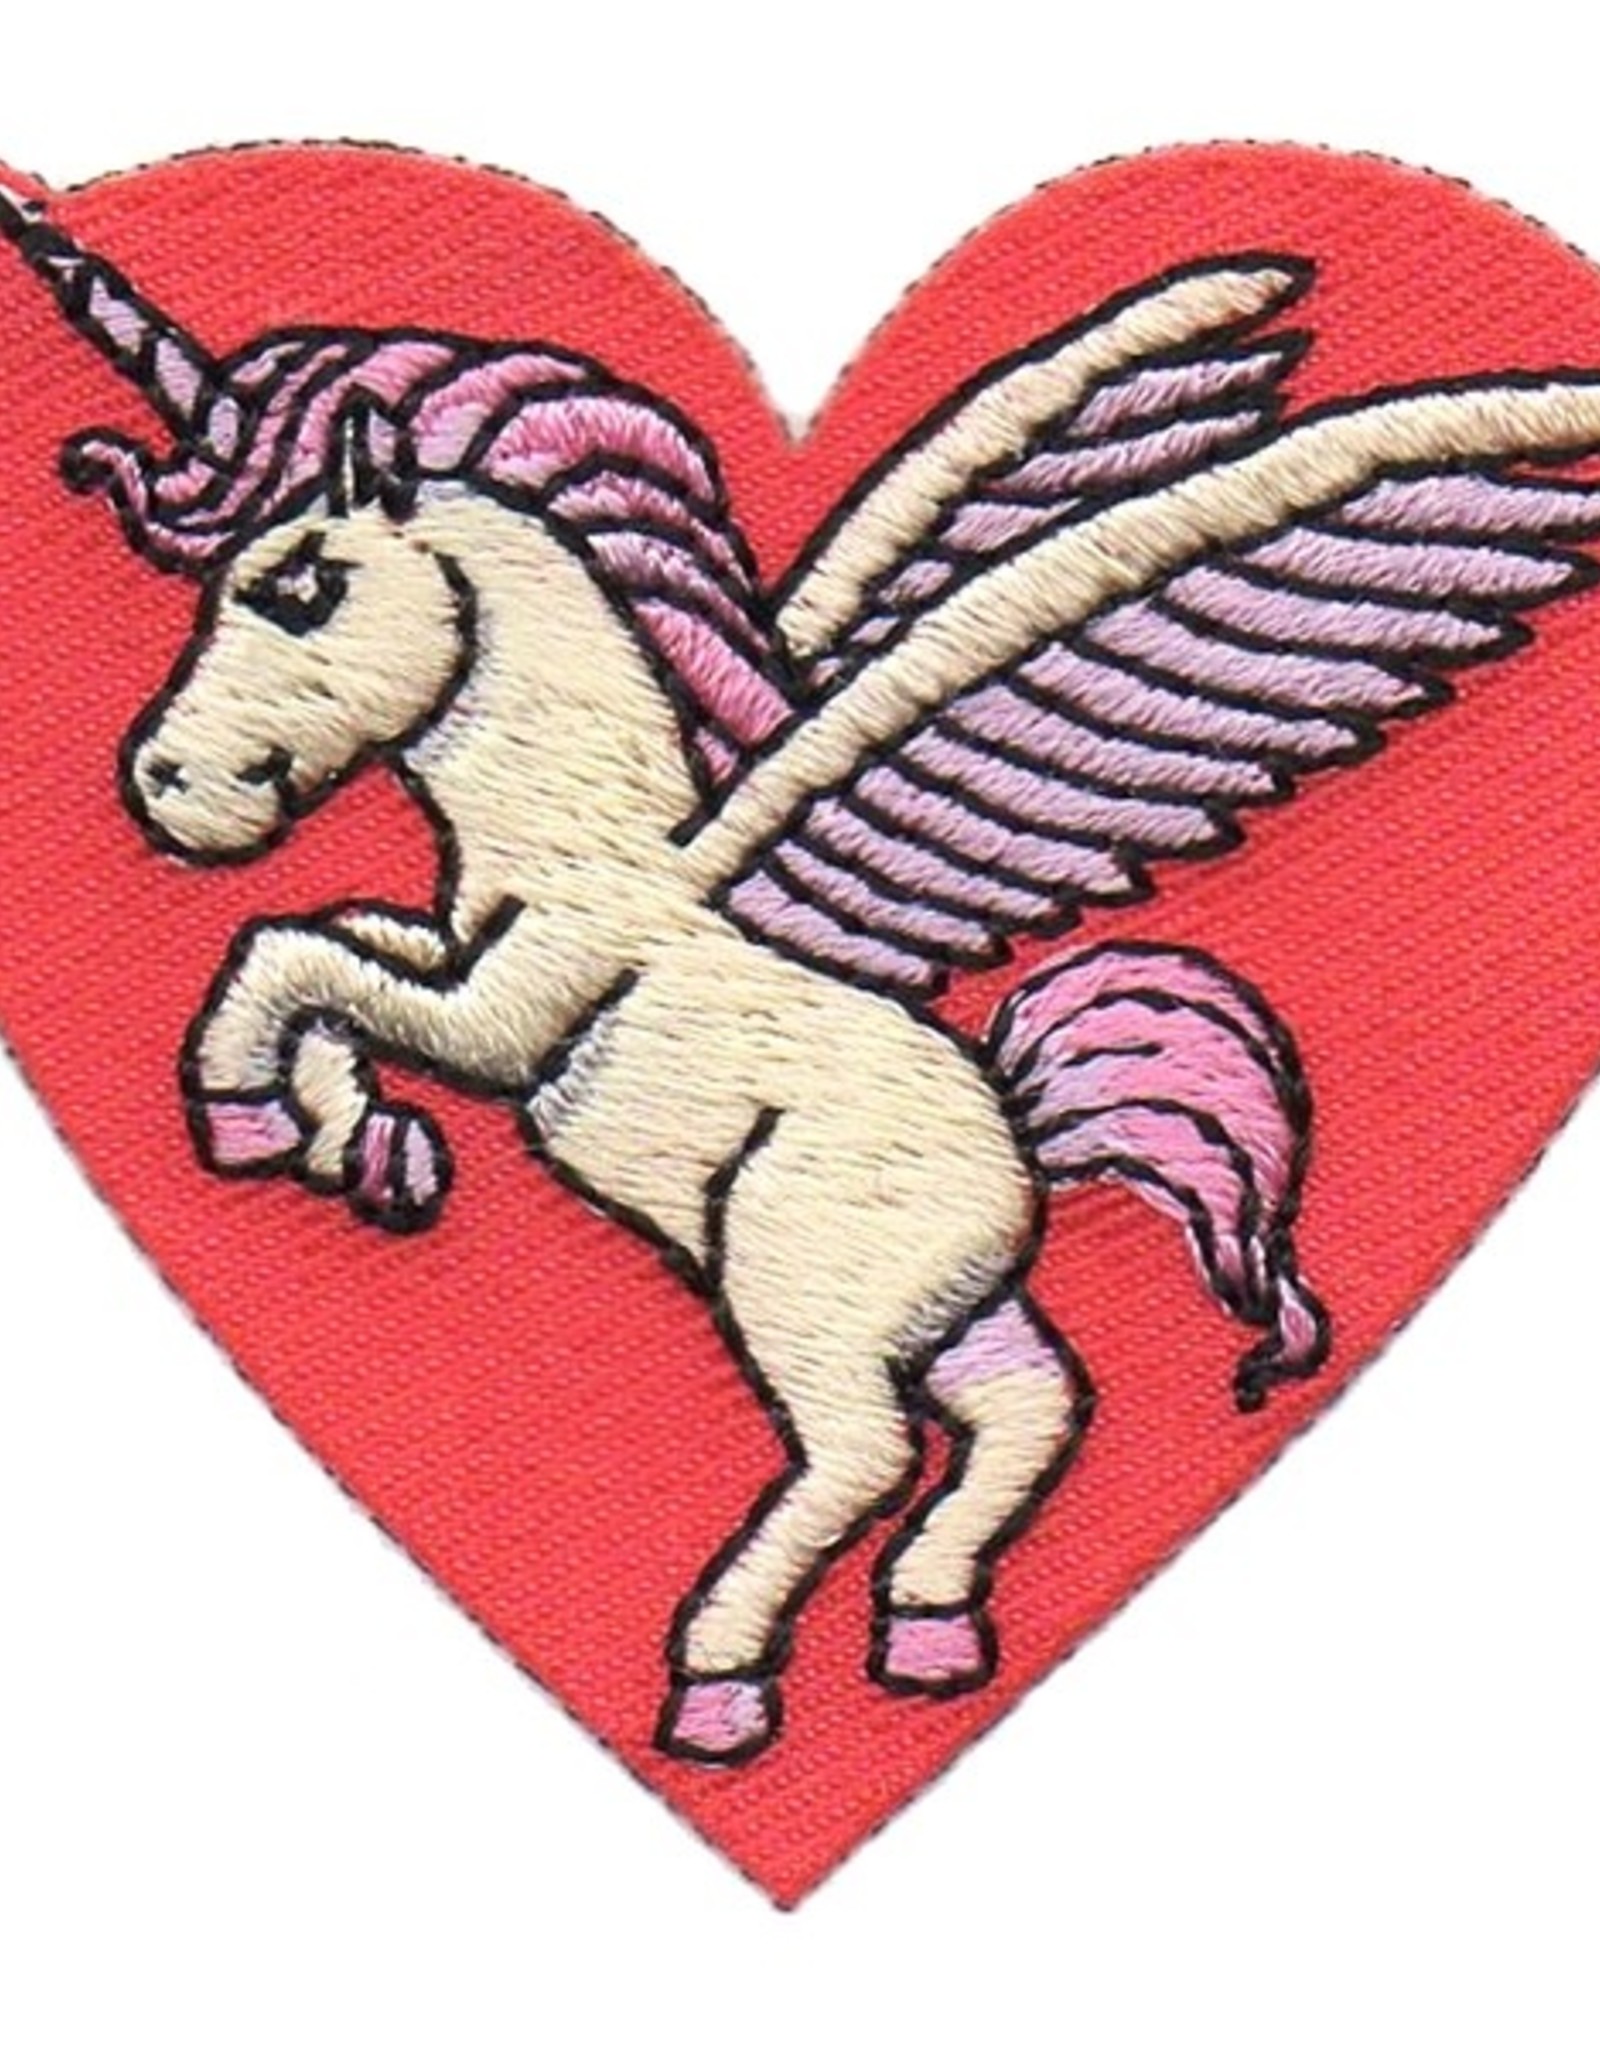 Advantage Emblem & Screen Prnt *Unicorn in Red Heart Fun Patch